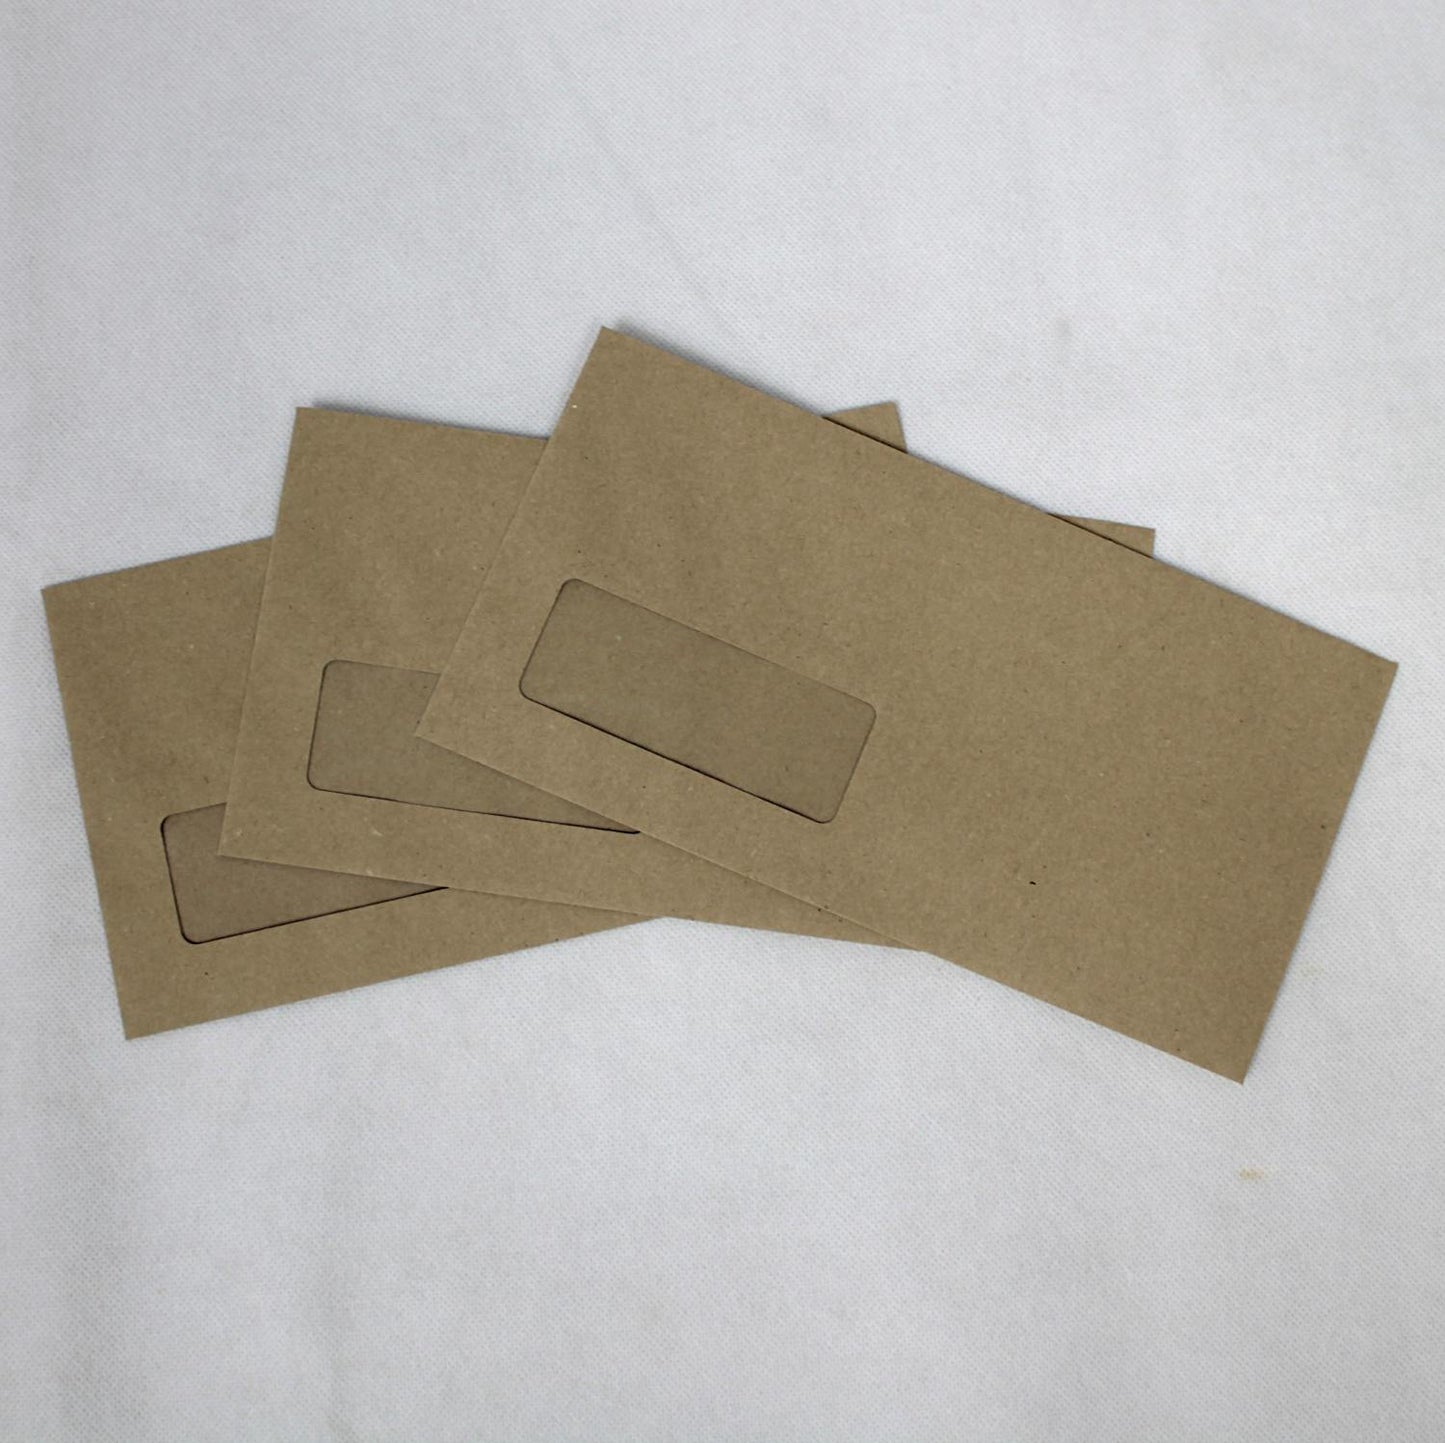 121x235mm DL+ Manilla Gummed Envelopes (Window 35x90mm)